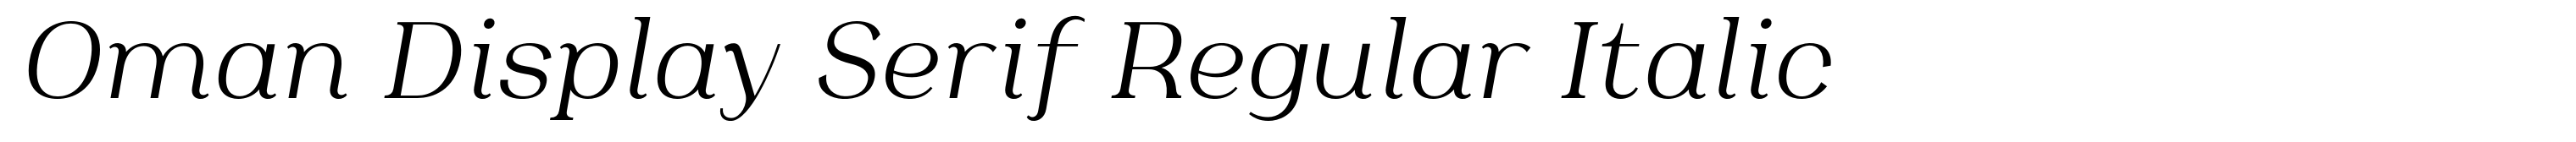 Oman Display Serif Regular Italic